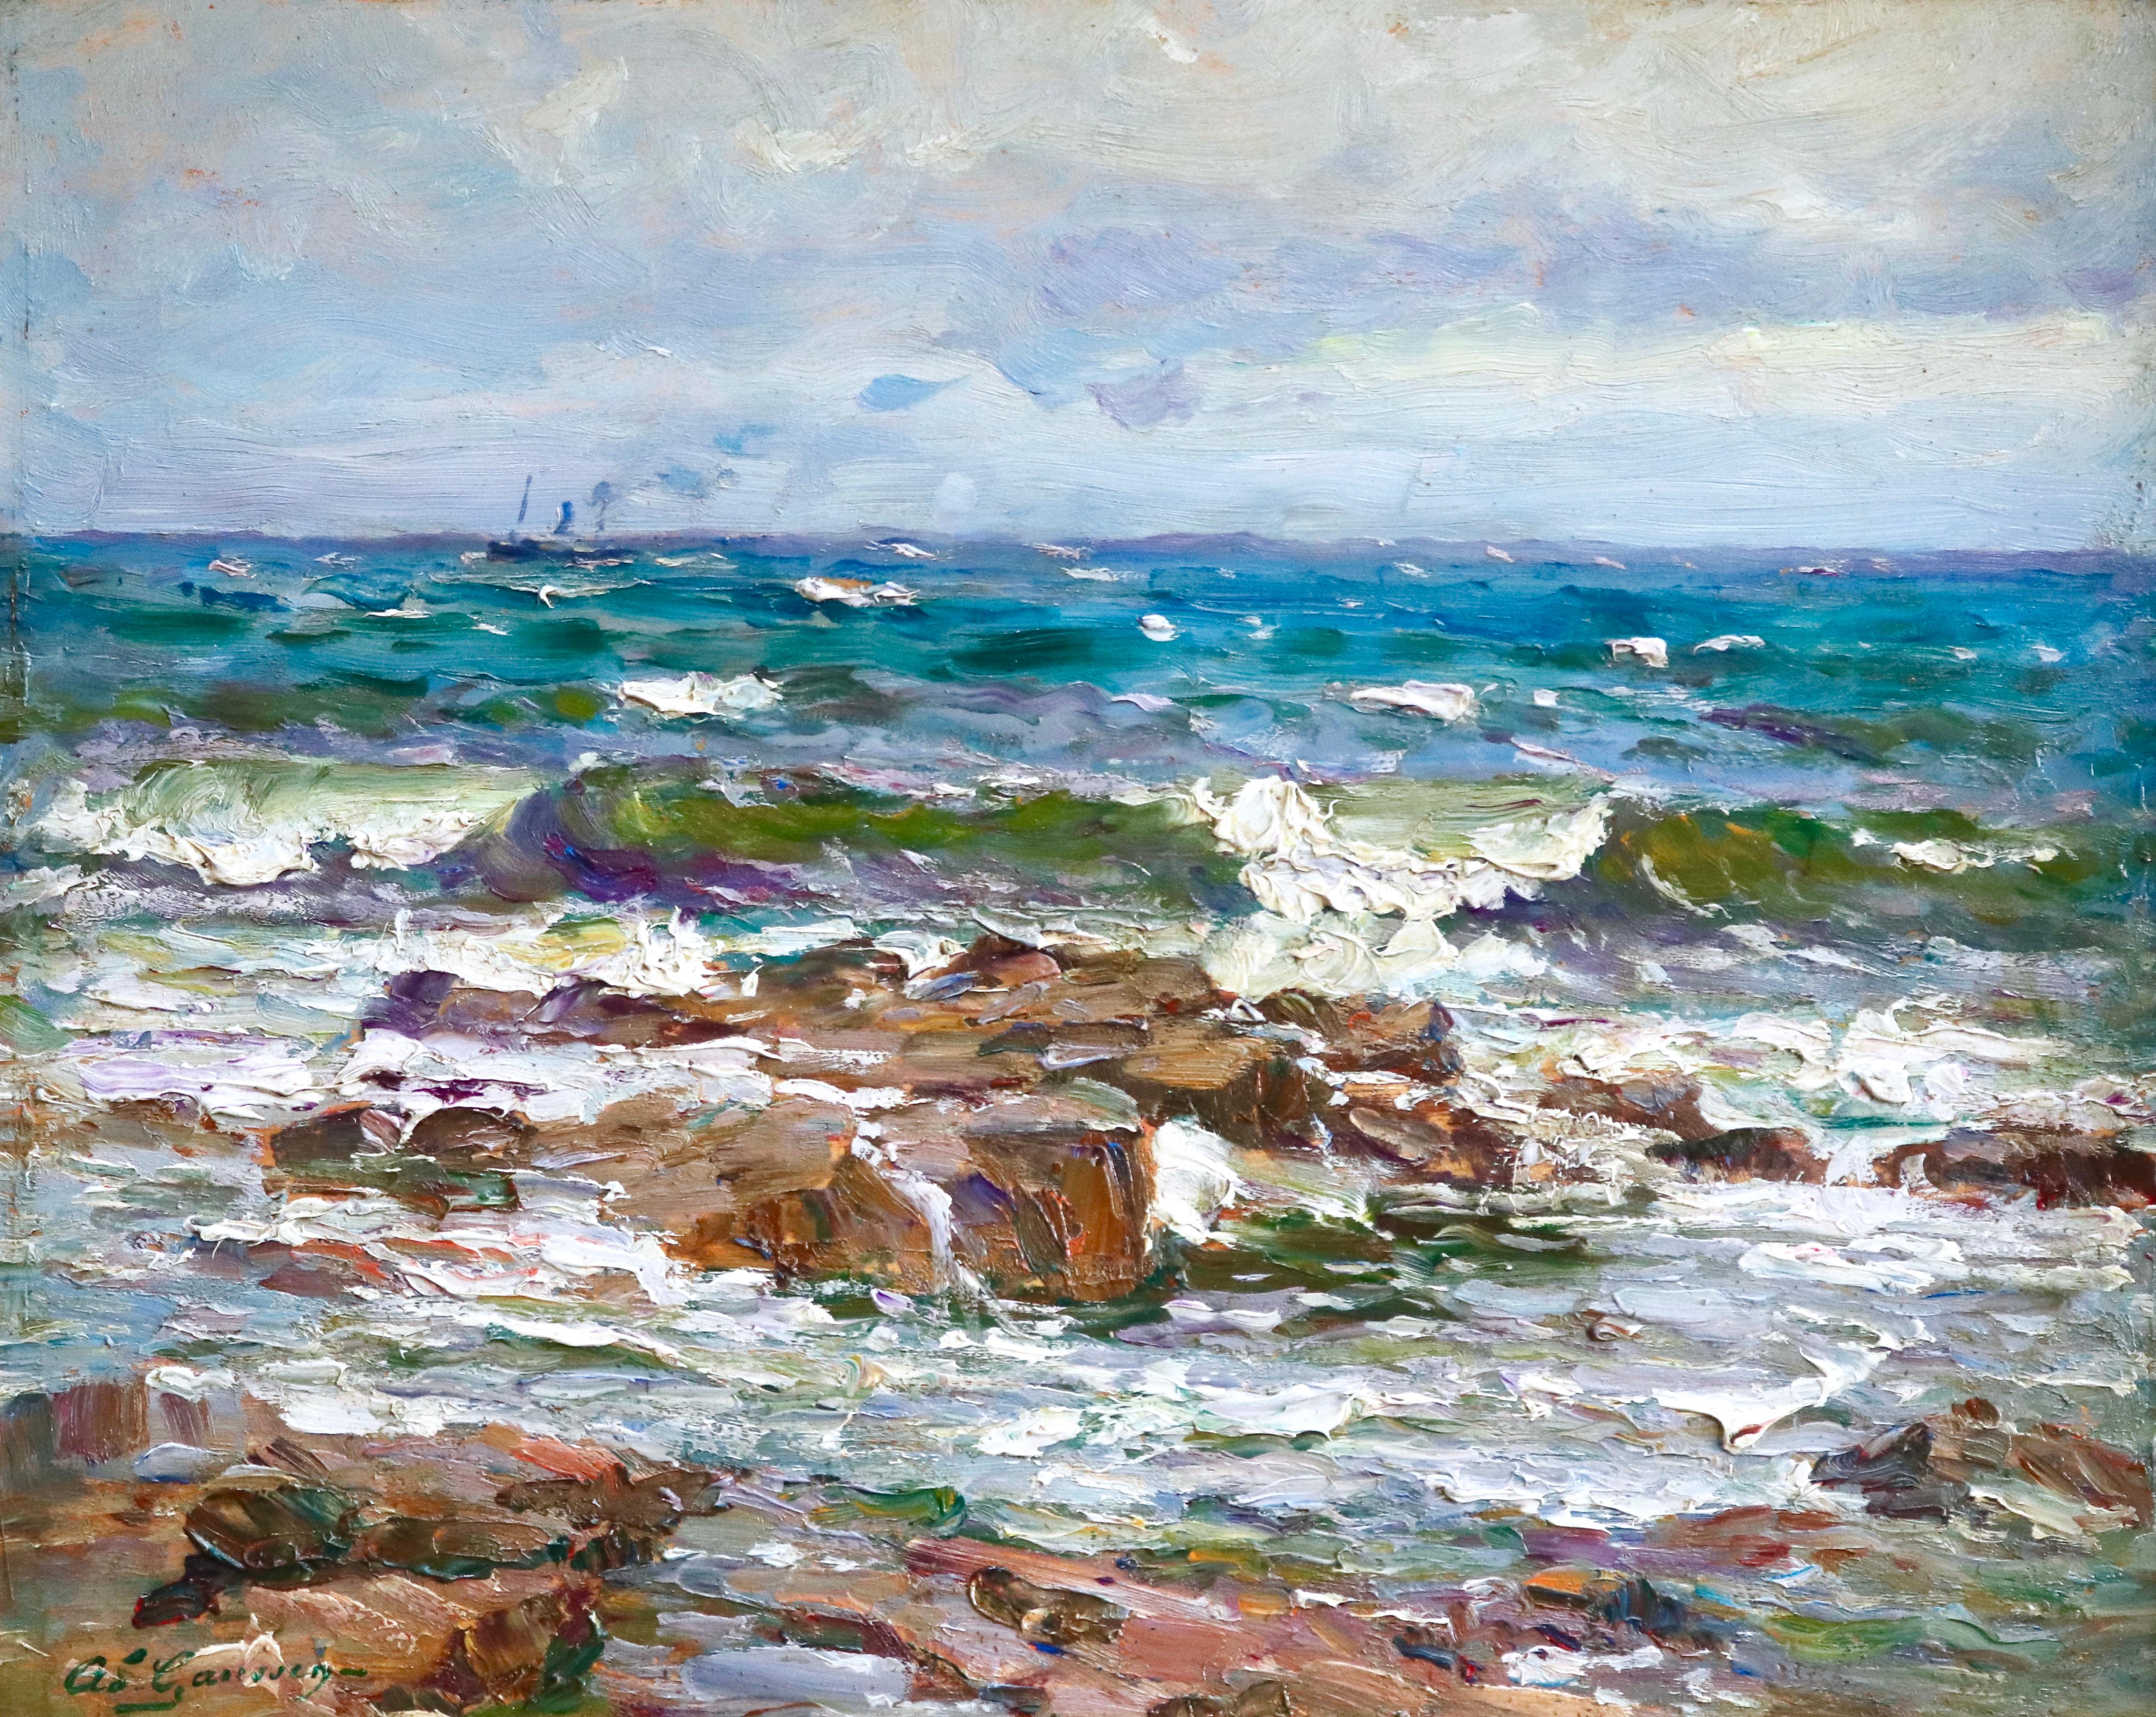 Landscape Painting Adolphe Louis Gaussen - The Coast - Saint Maxime - Huile du 19e siècle, paysage de bateau en mer par Gaussen